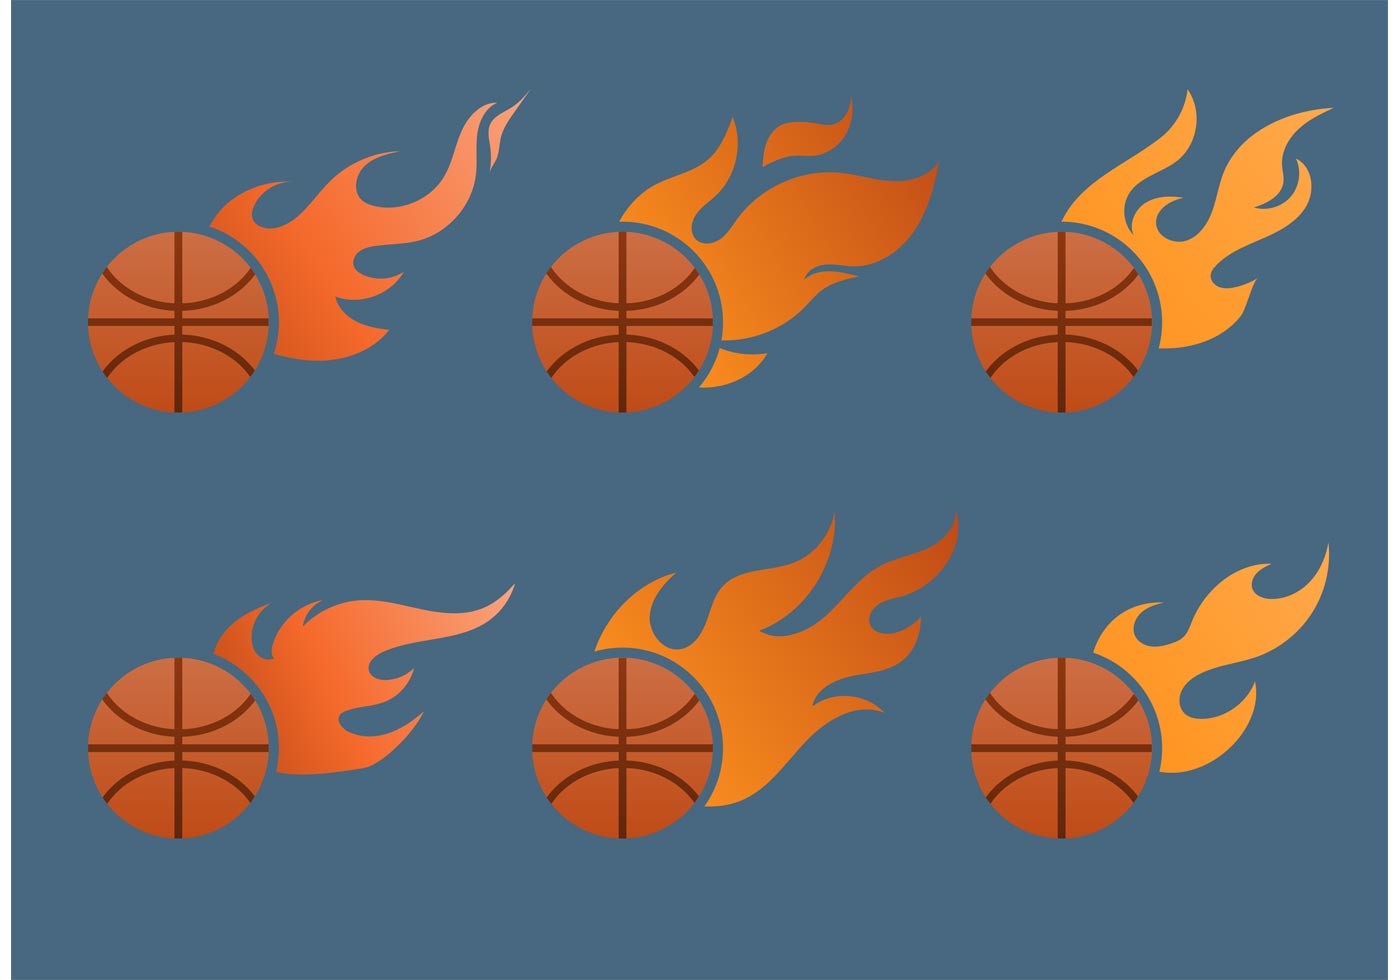 Flaming Basketball Vector Set - Download Free Vectors, Clipart Graphics & Vector Art